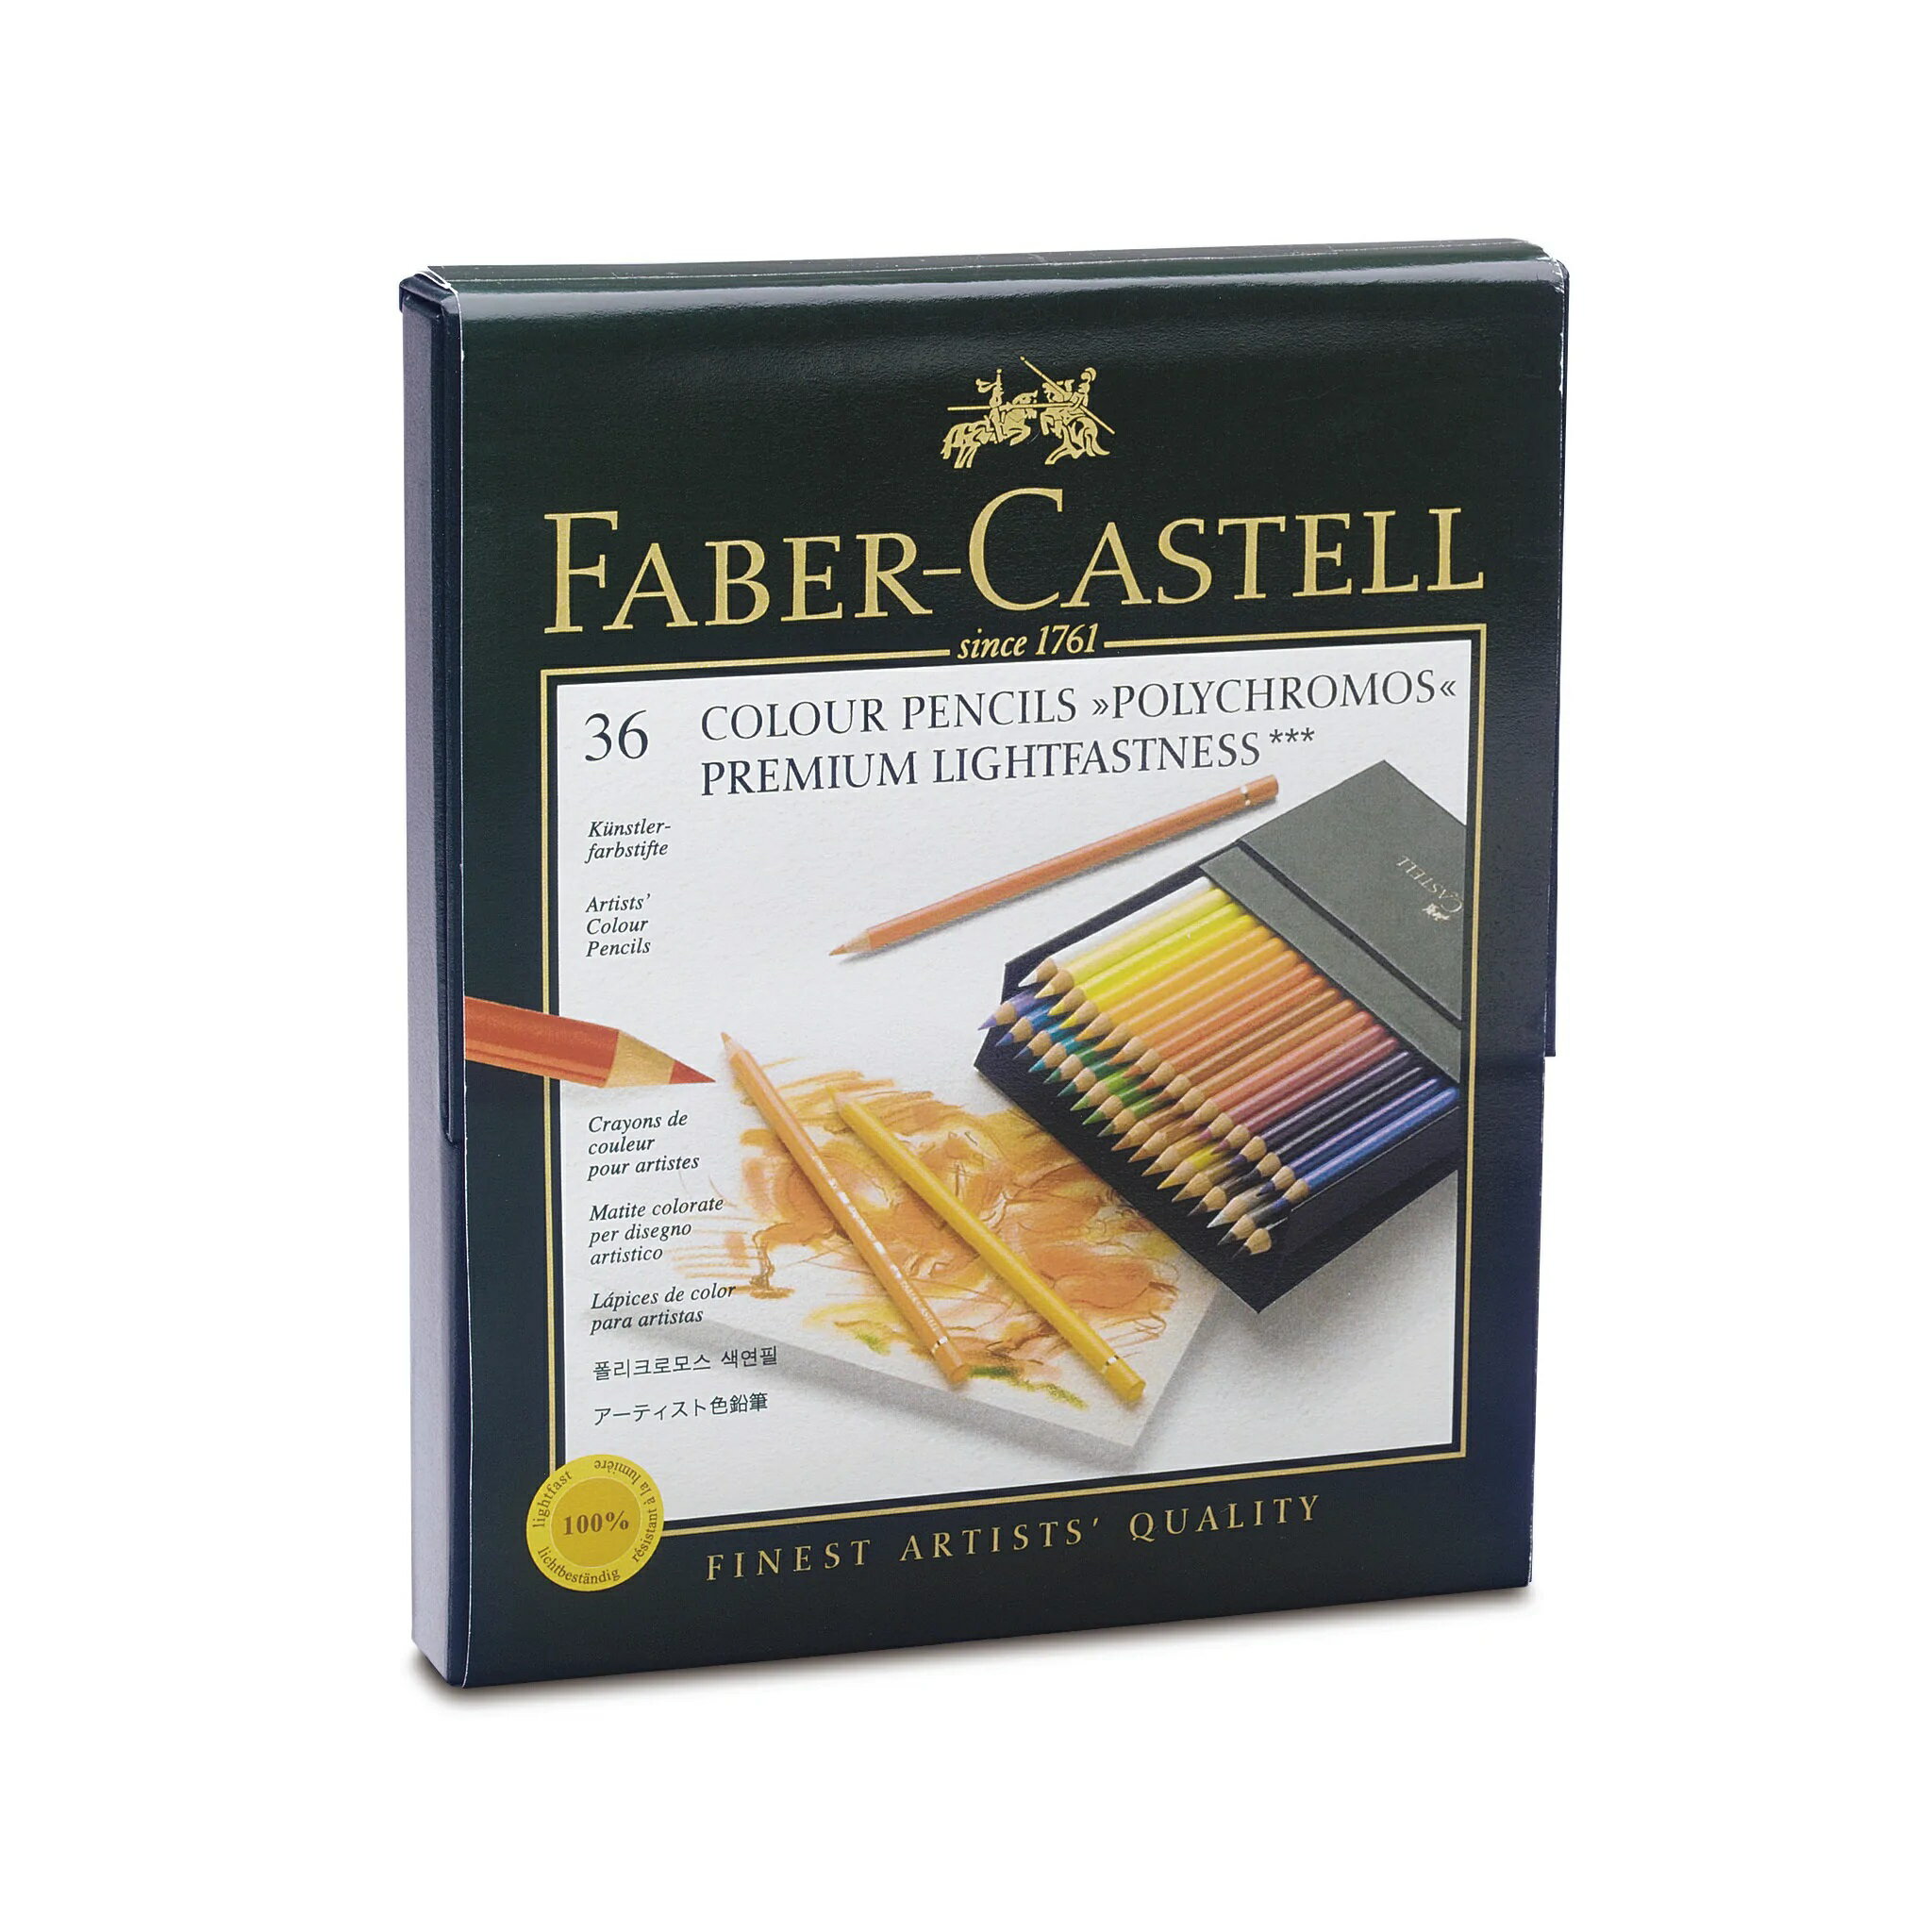 Faber-Castell藝術級油性色鉛筆36色精裝版 *110036